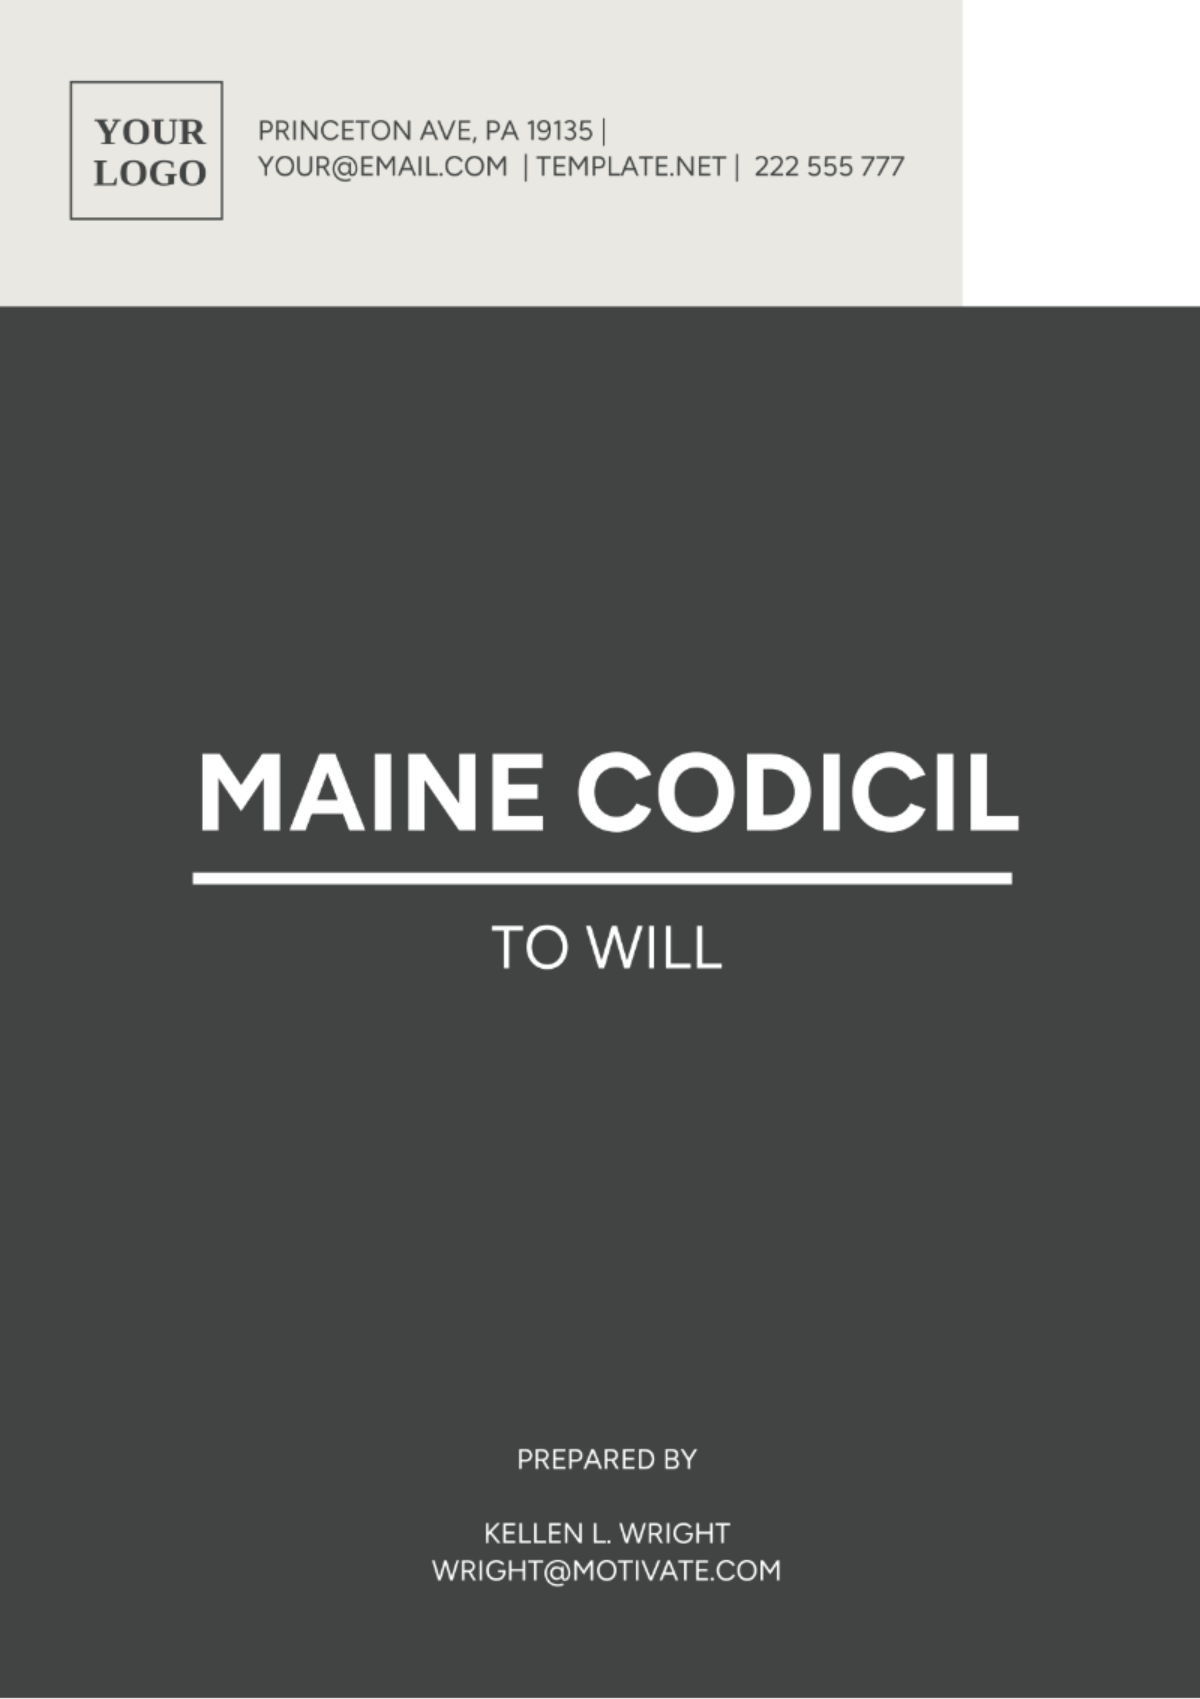 Maine Codicil to Will Template